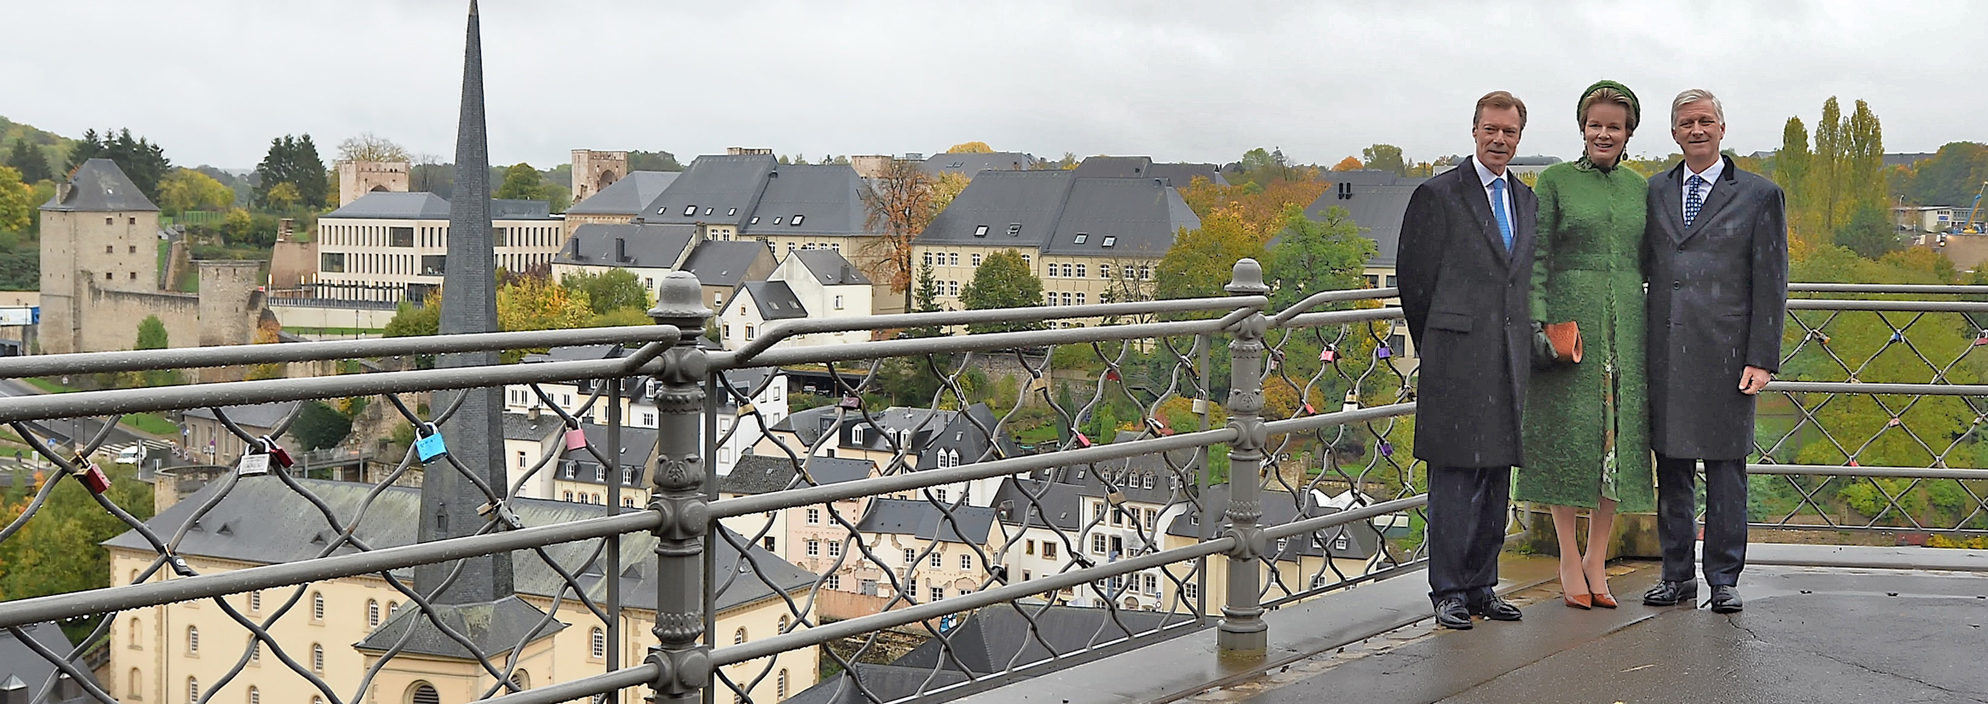 Royaler Besuch in Luxemburg: Belgisches Königspaar schaut sich die Hauptstadt an